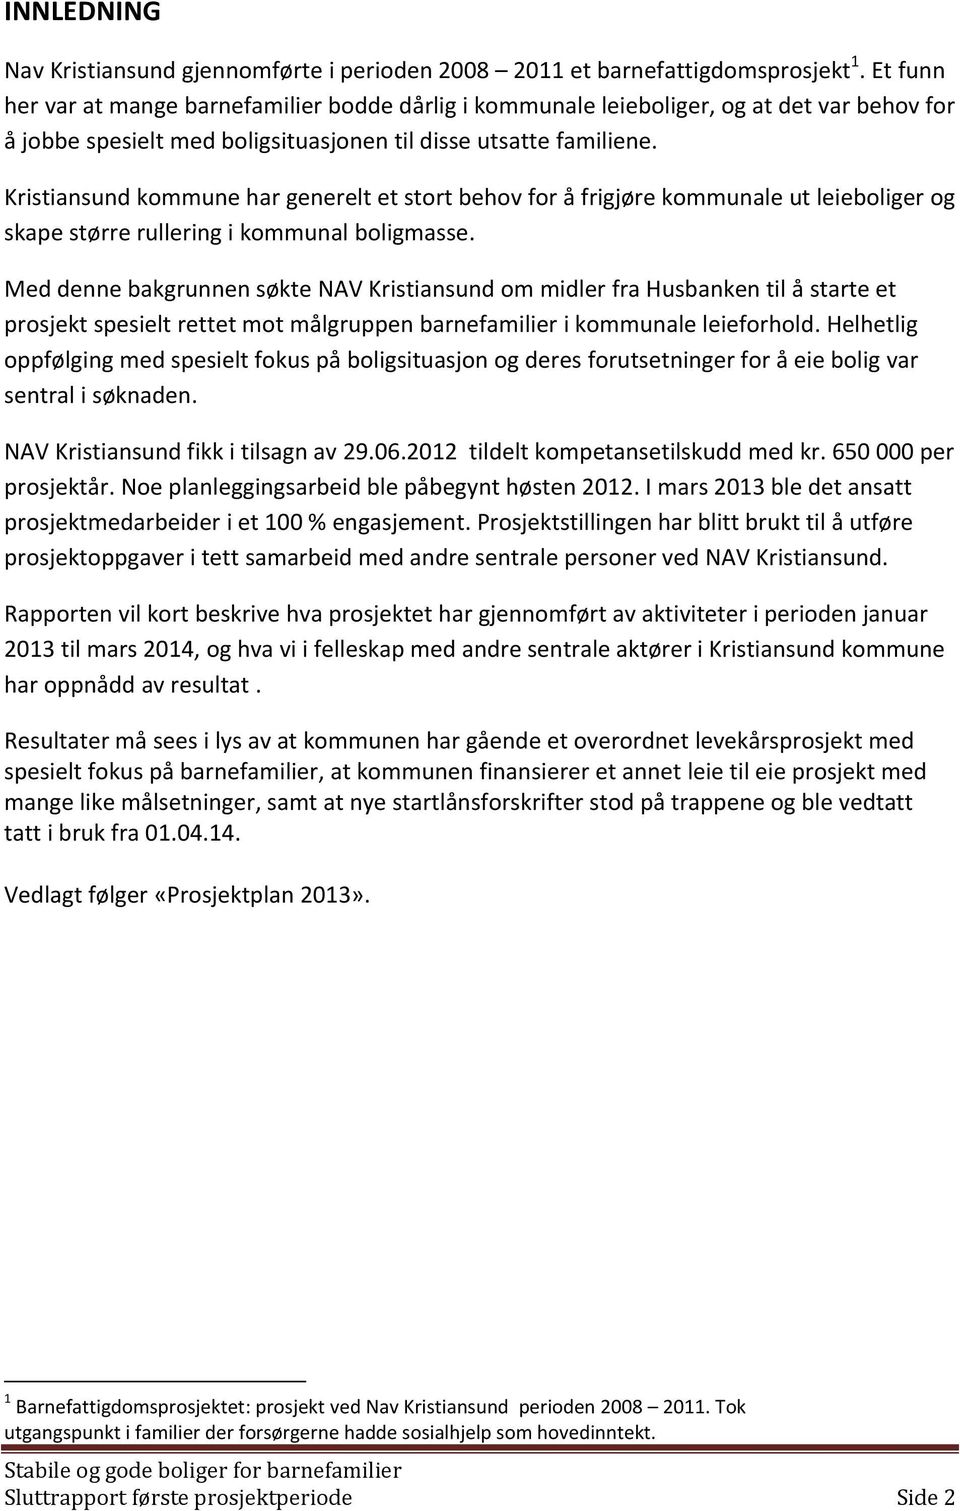 Kristiansund kommune har generelt et stort behov for å frigjøre kommunale ut leieboliger og skape større rullering i kommunal boligmasse.